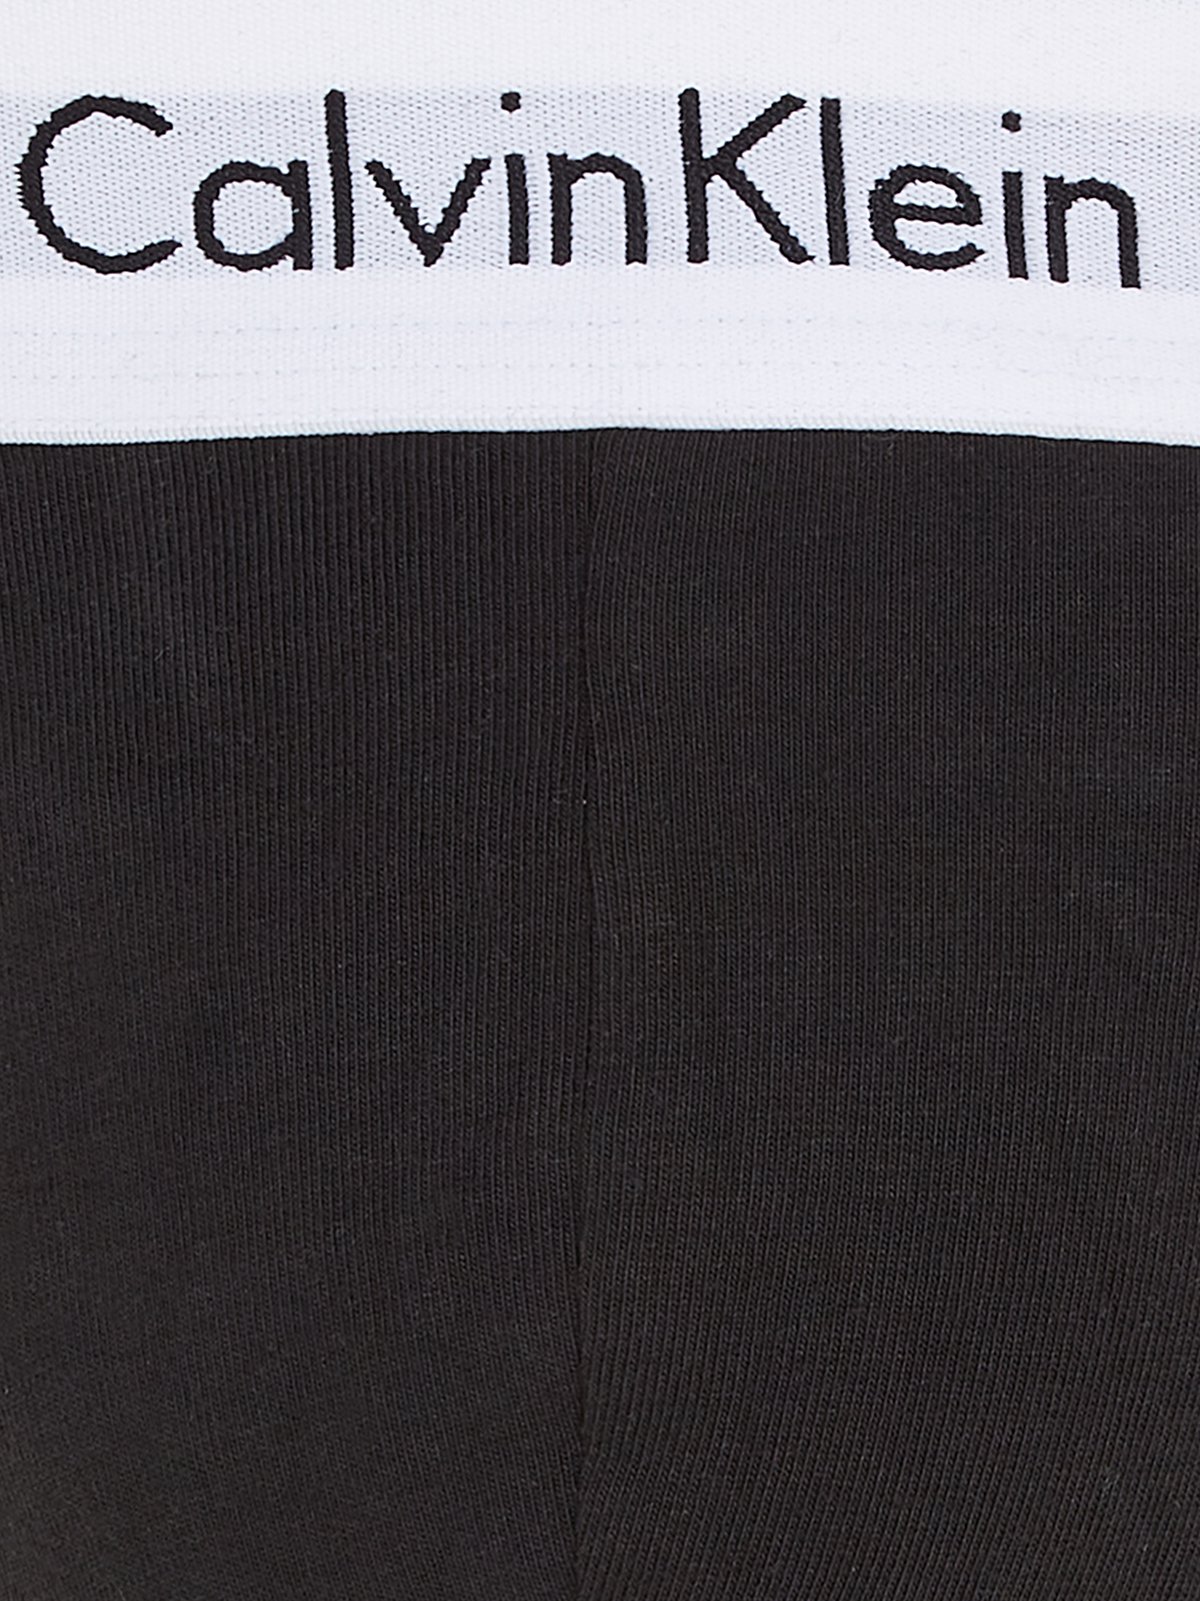 Men's underwear set 3PK Calvin Klein Underwear